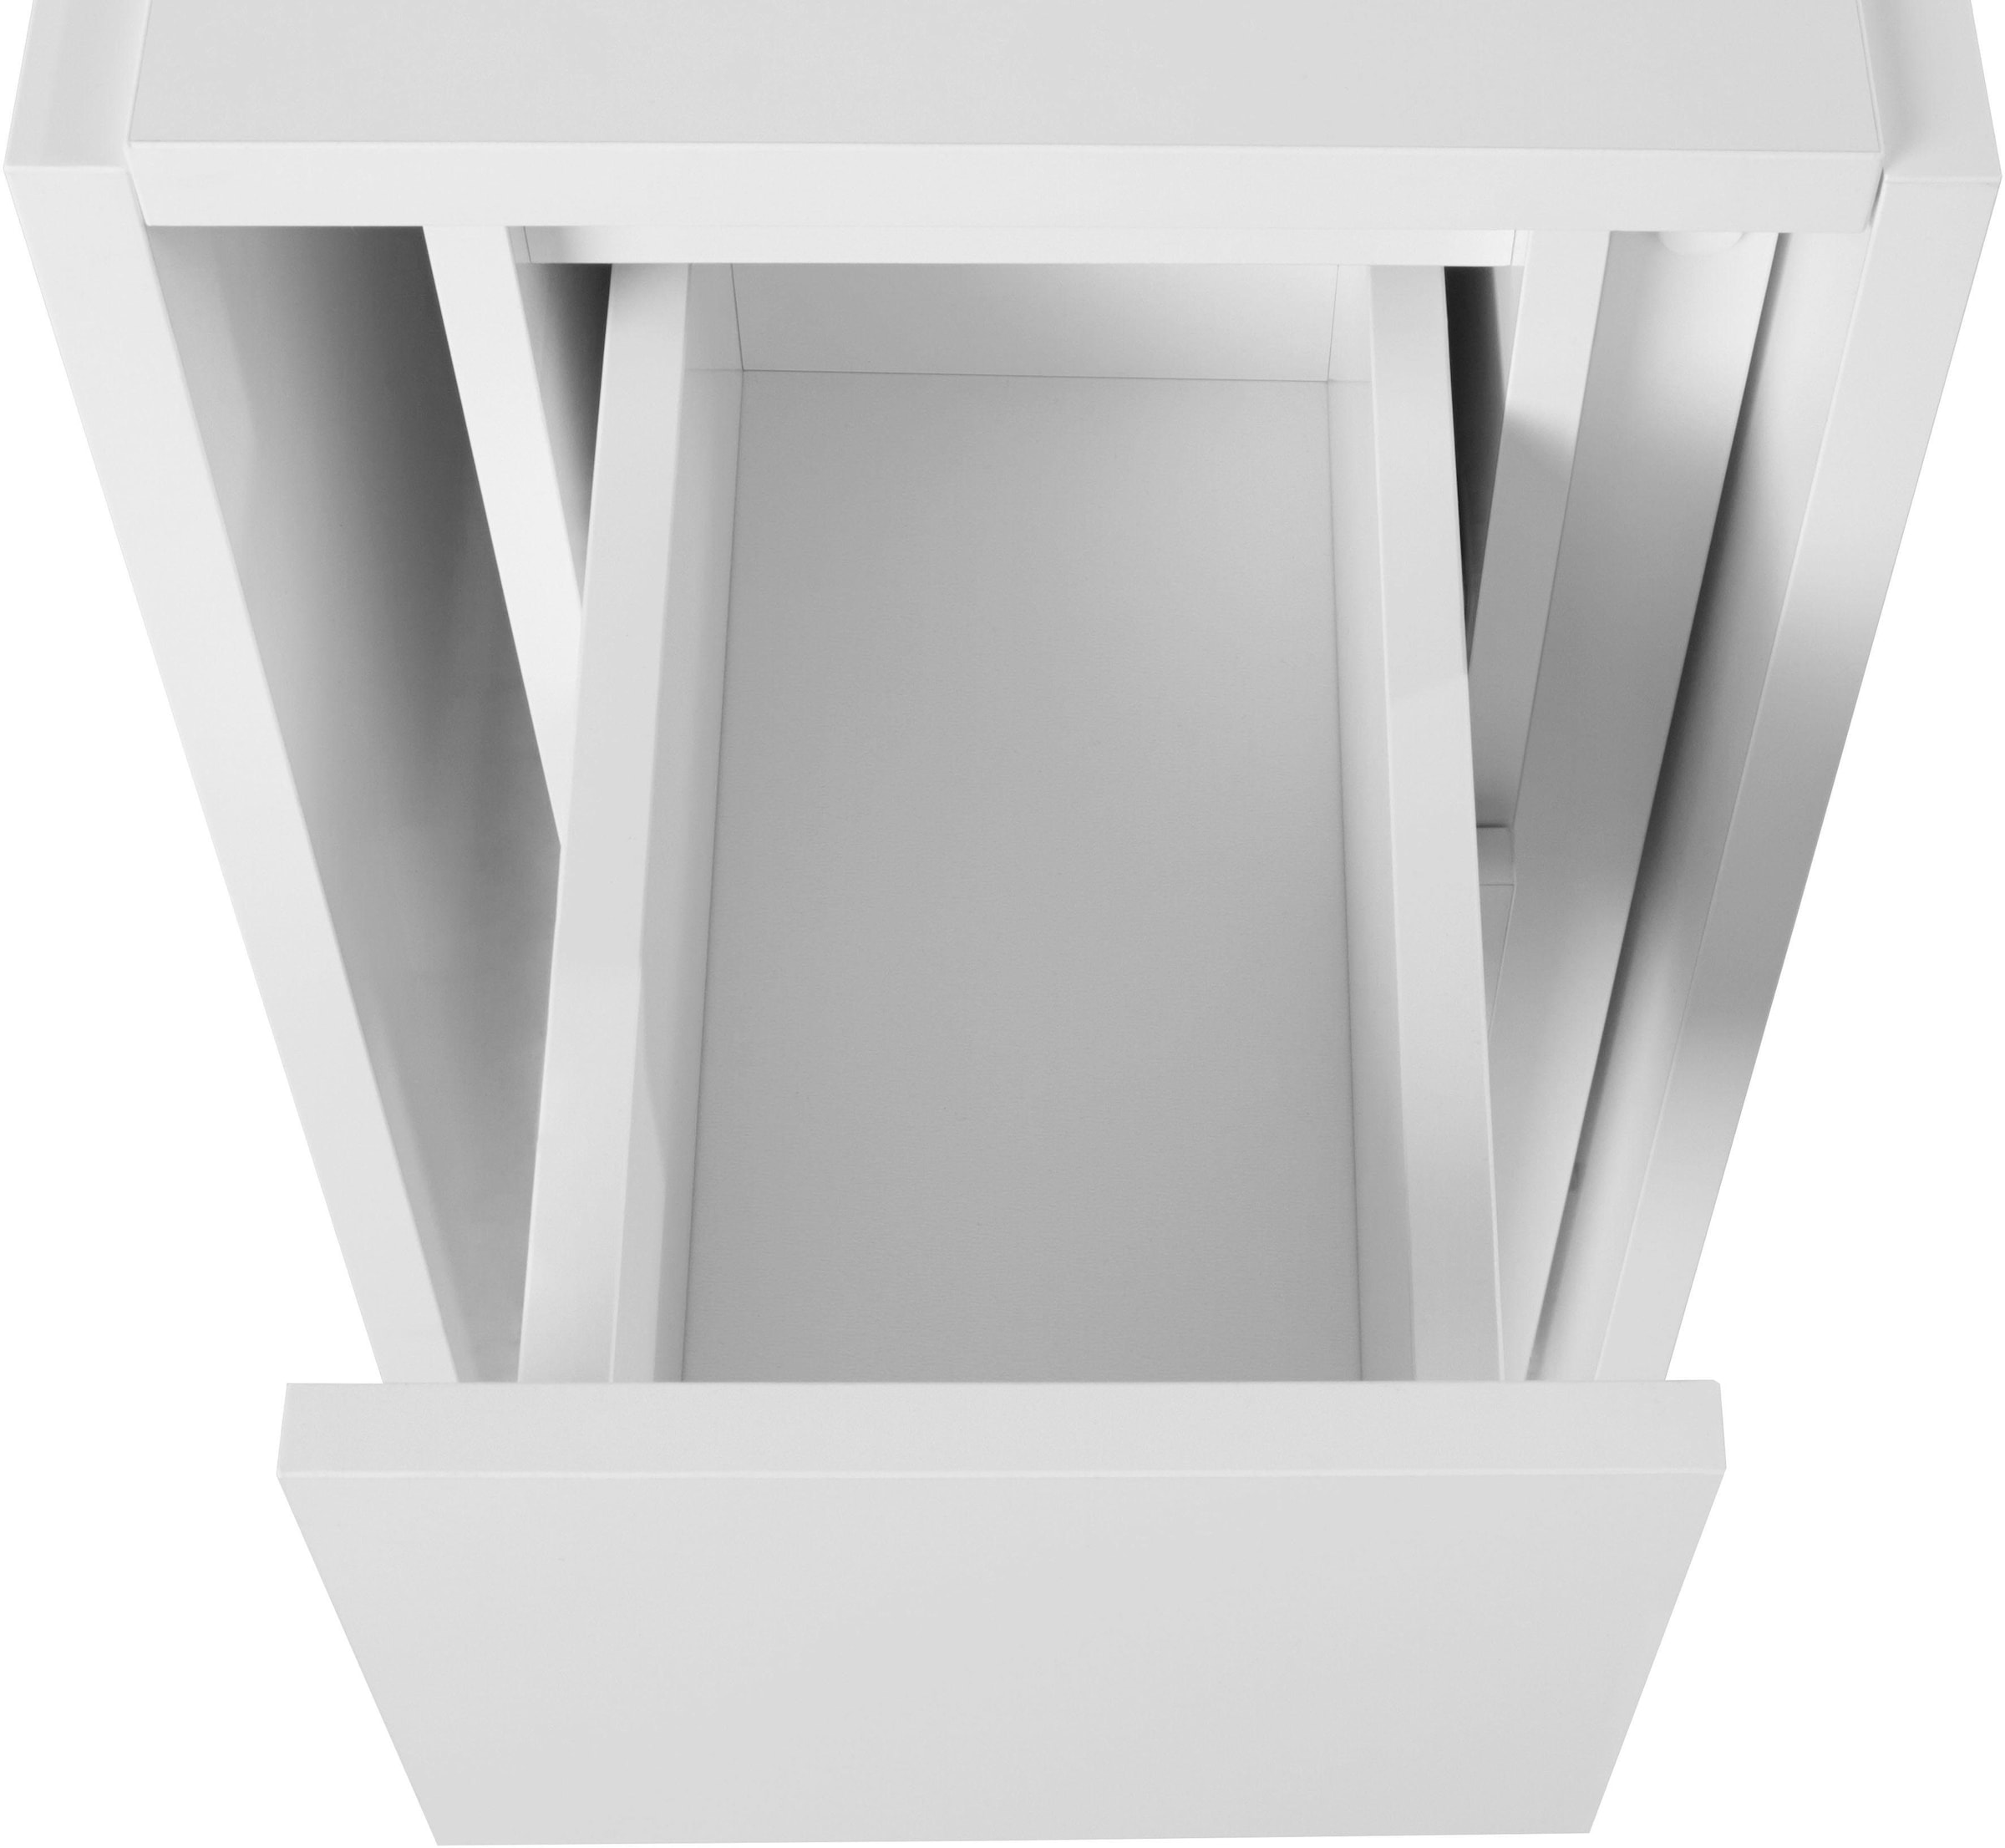 Woodman Esstisch »Jasper«, mit einer rechteckigen Tischplatte und Auszugsfunktion, Breite 90 cm